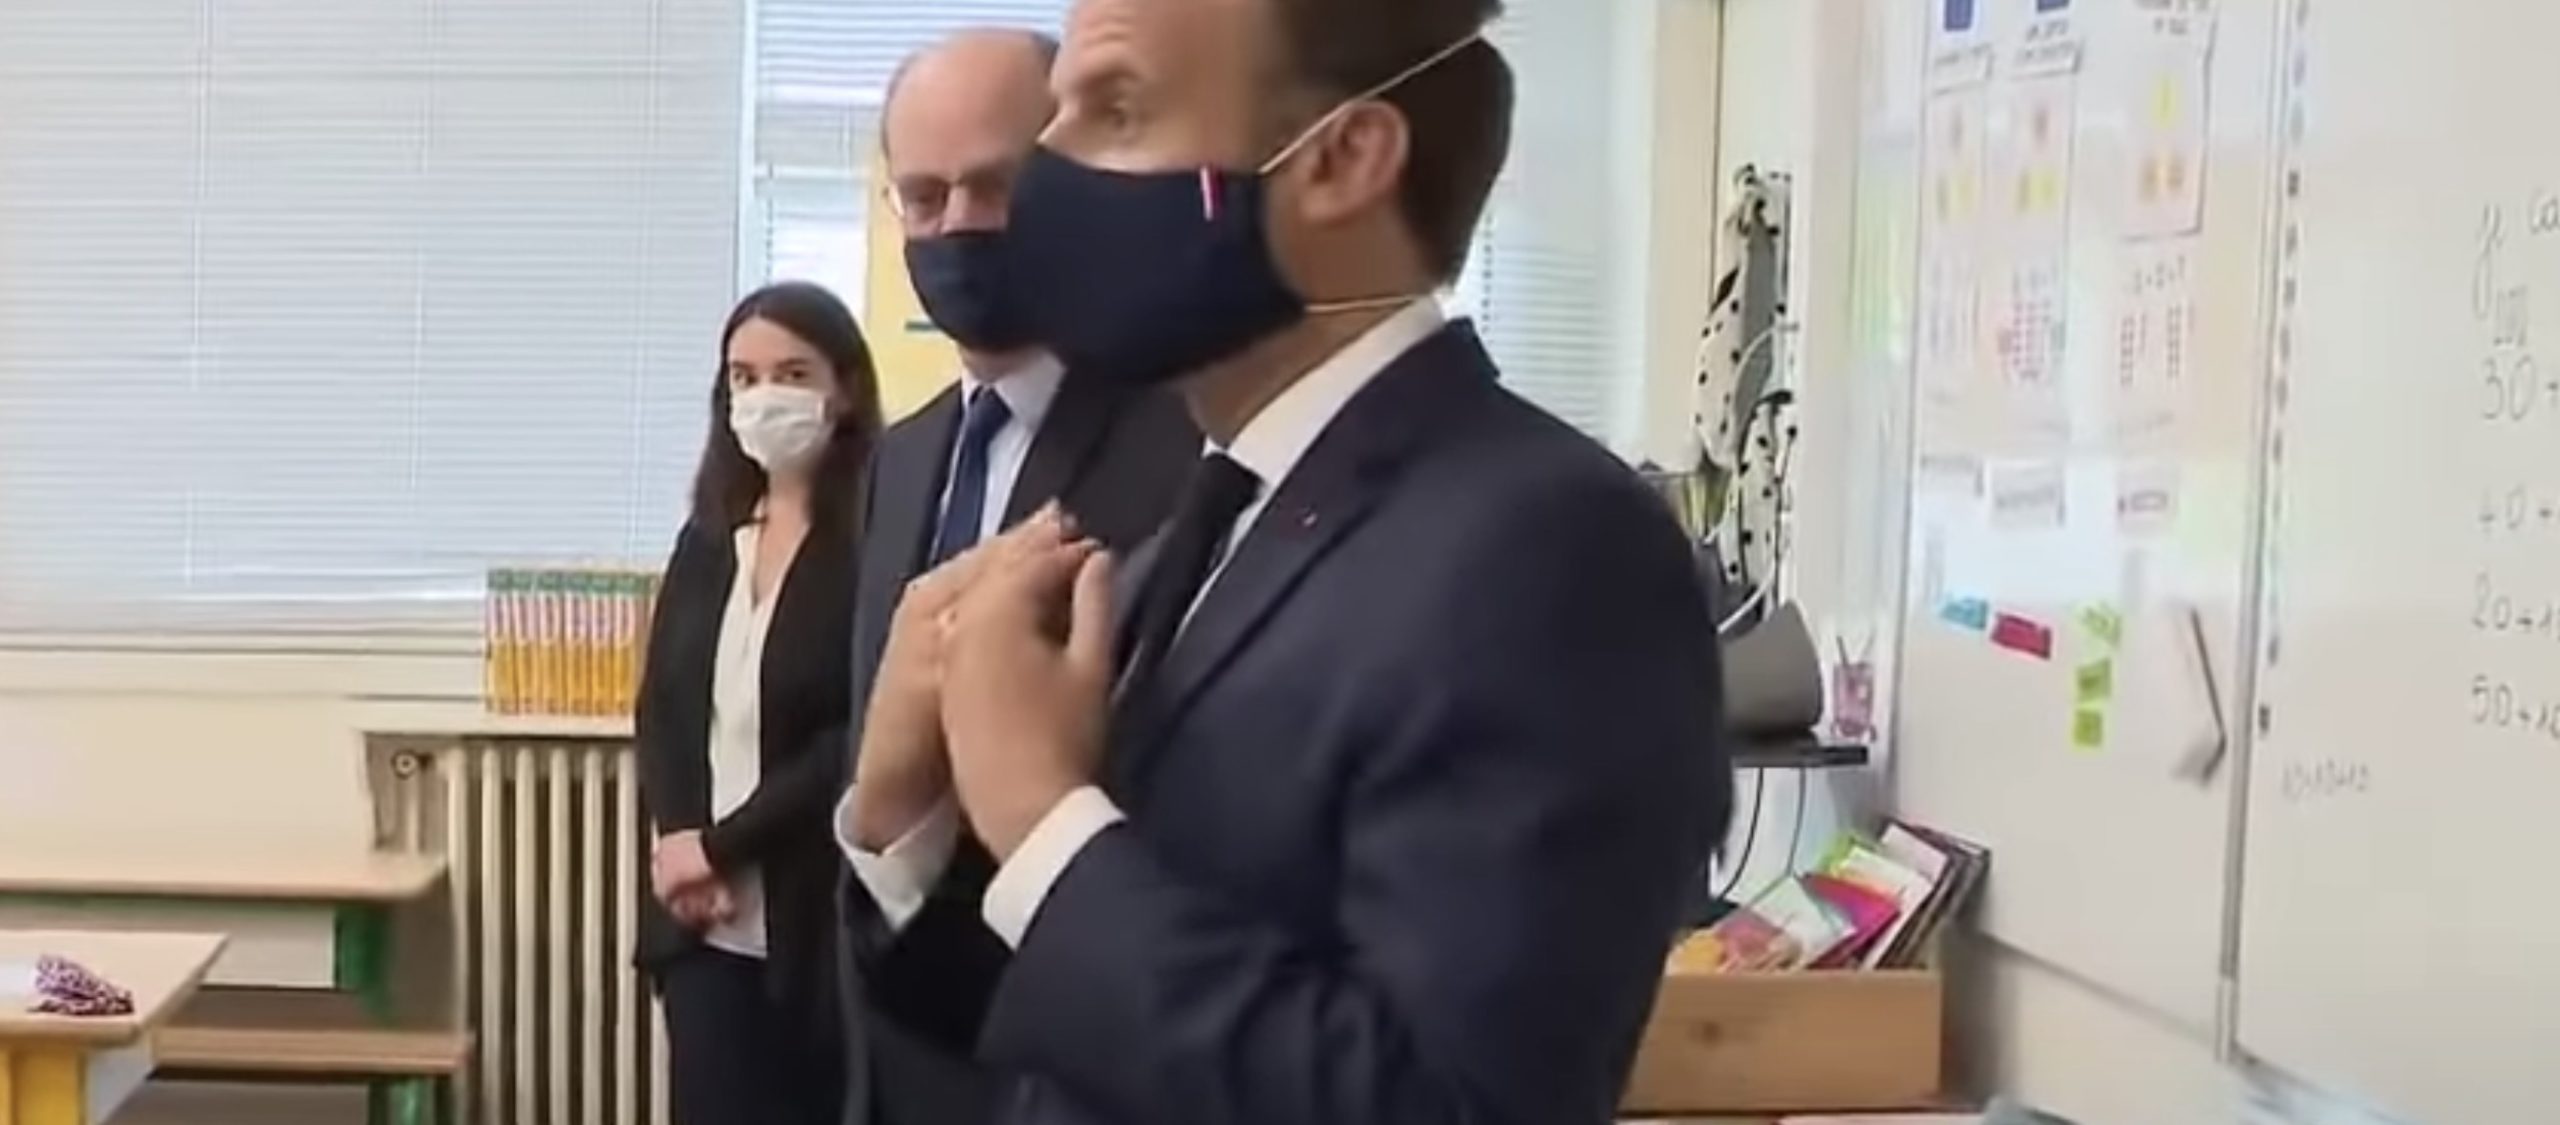 Emmanuel Macron en visite dans une école pour donner le bon exemple